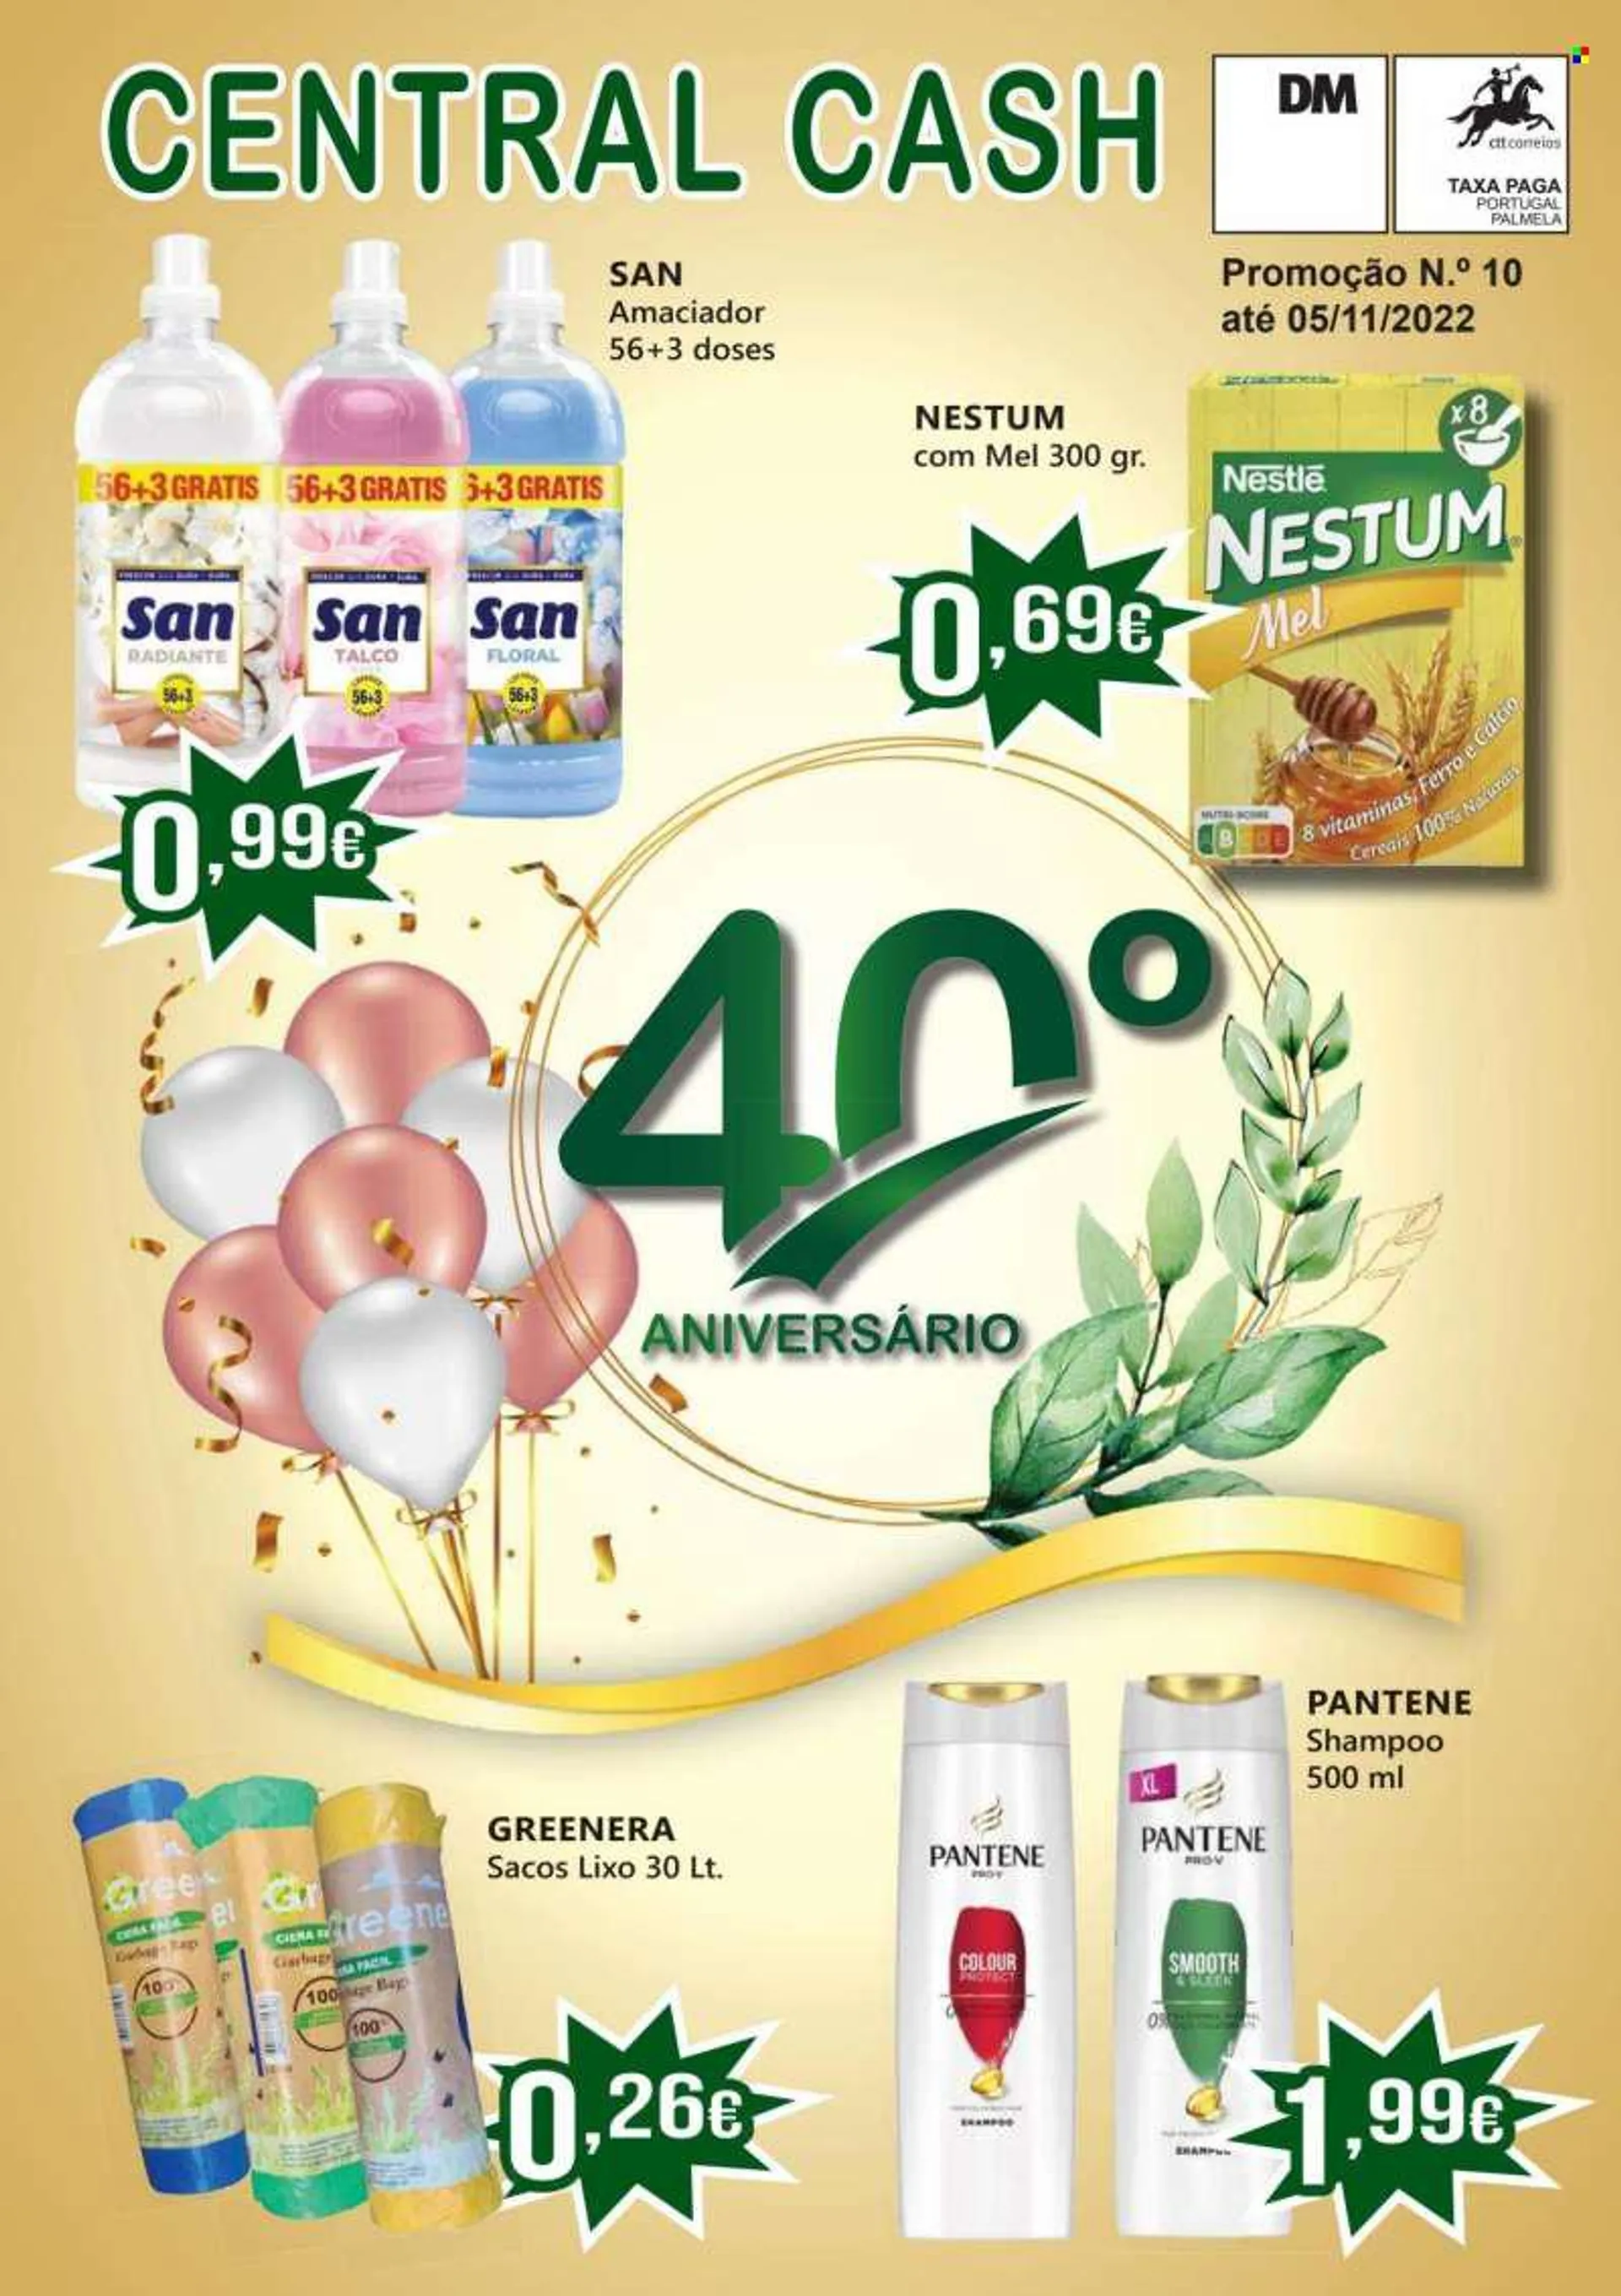 Folheto Central Cash - 19.10.2022 - 5.11.2022 - Produtos em promoção - Nestlé, cereais, Nestum Mel, amaciador, shampoo, Pantene. Página 1.